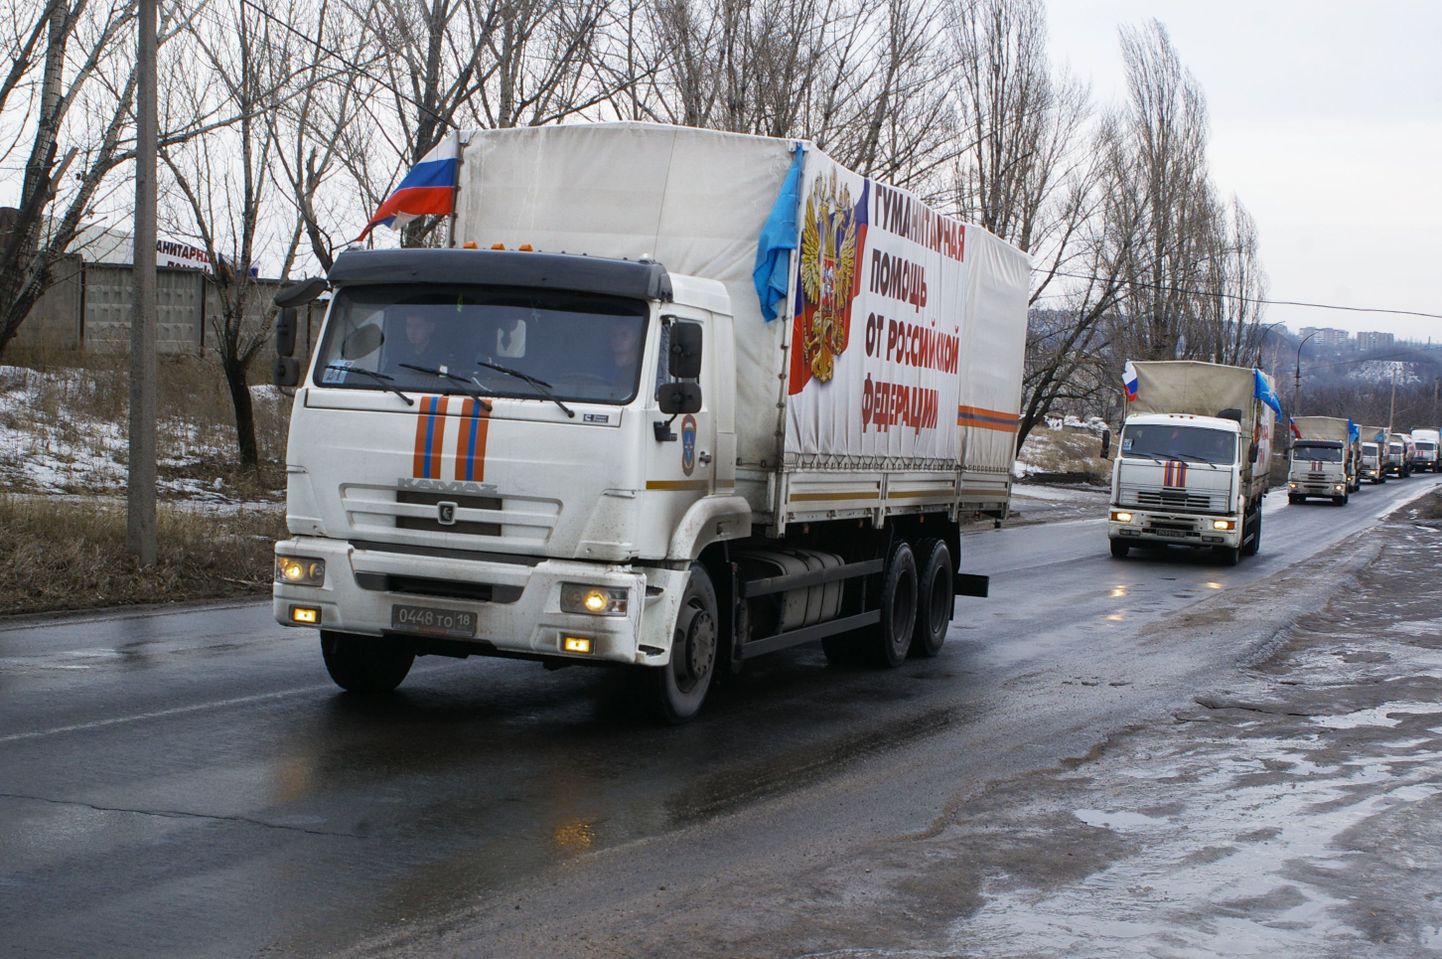 Vene väidetav humanitaarabikonvoi